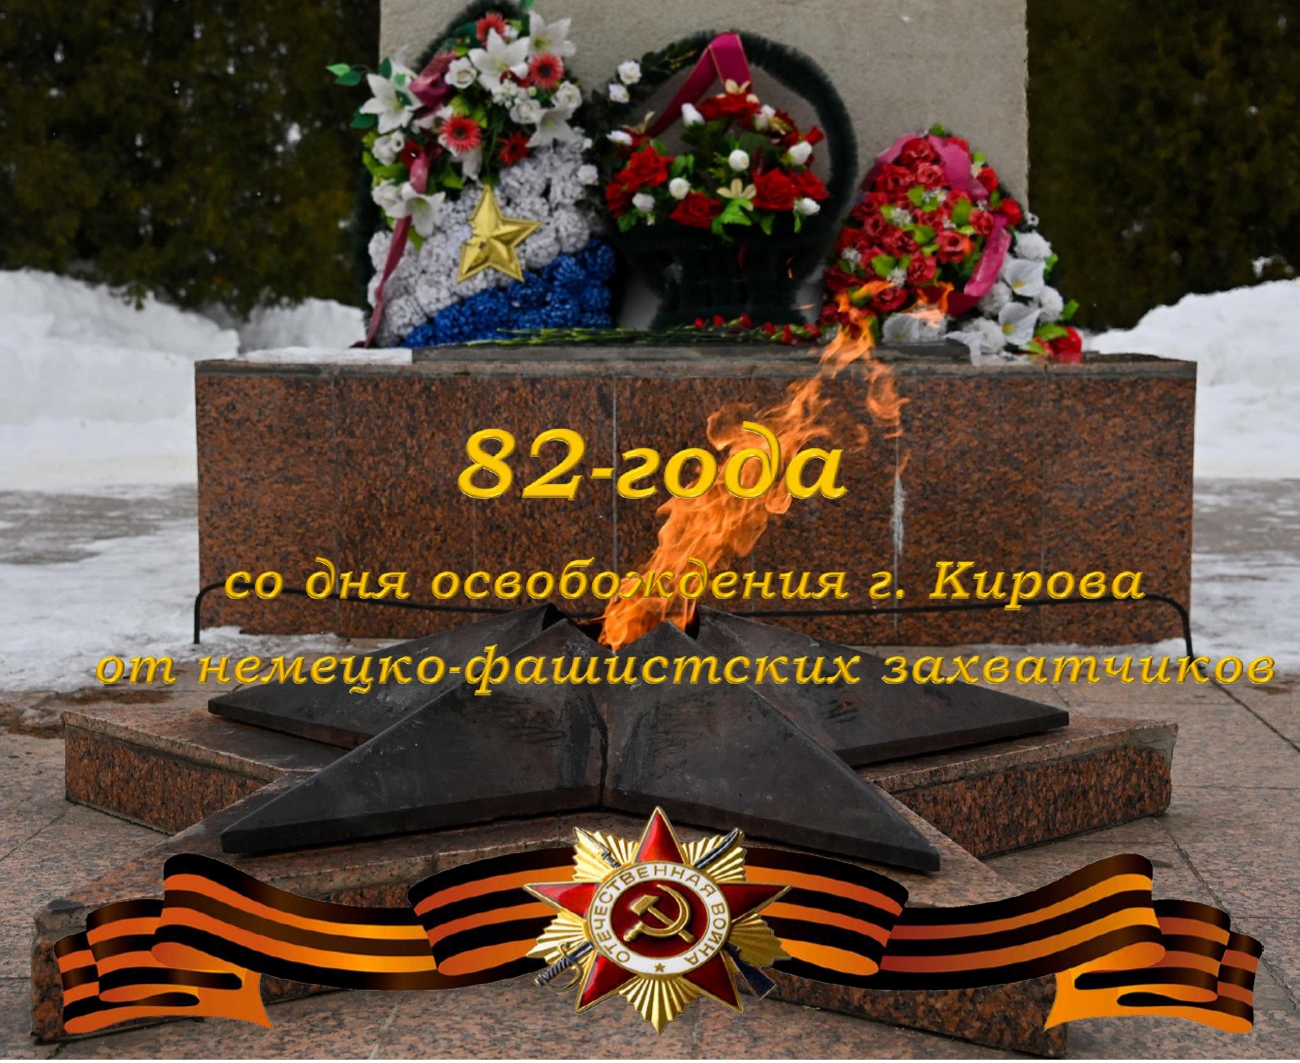 Сегодня отмечается важная памятная дата в истории города Кирова - 82 годовщина освобождения города Кирова от немецко-фашистских захватчиков!.